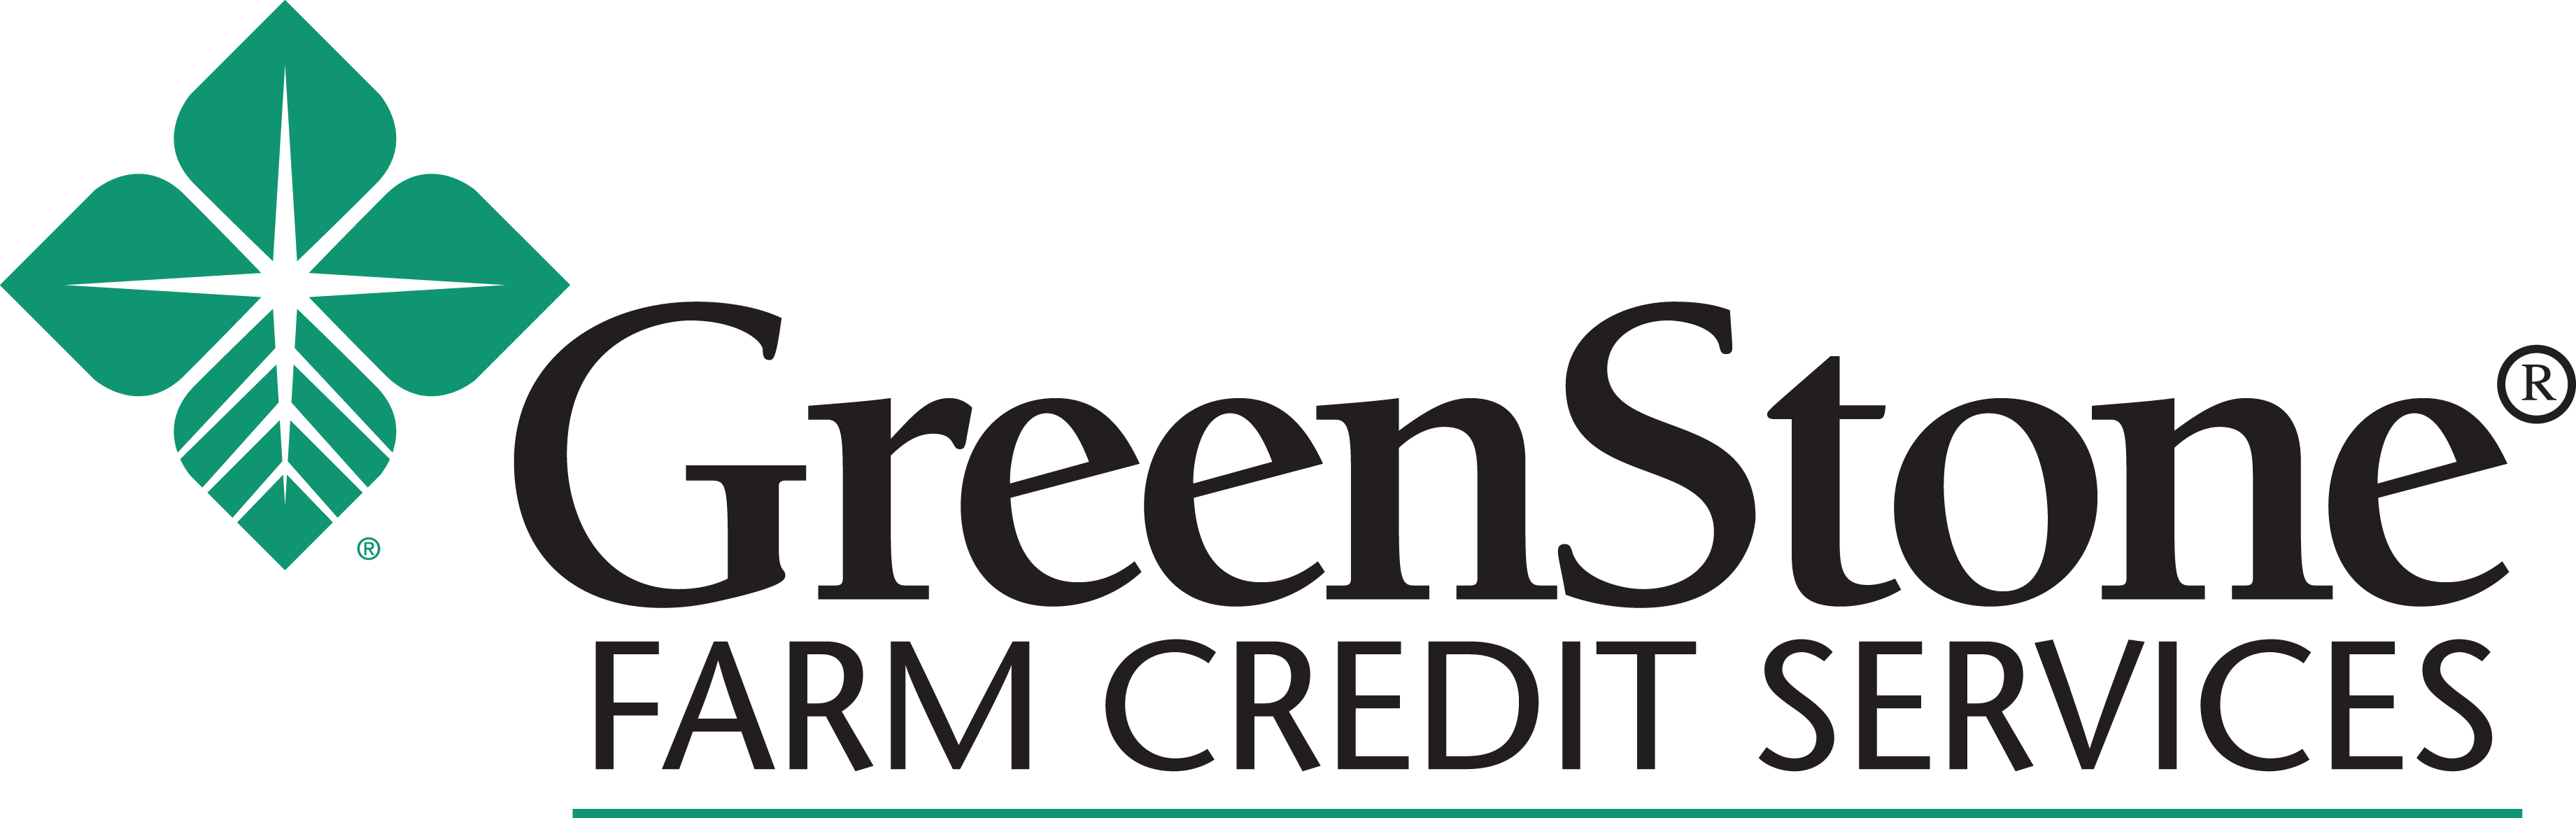 GreenStone Farm Credit Services Company Logo